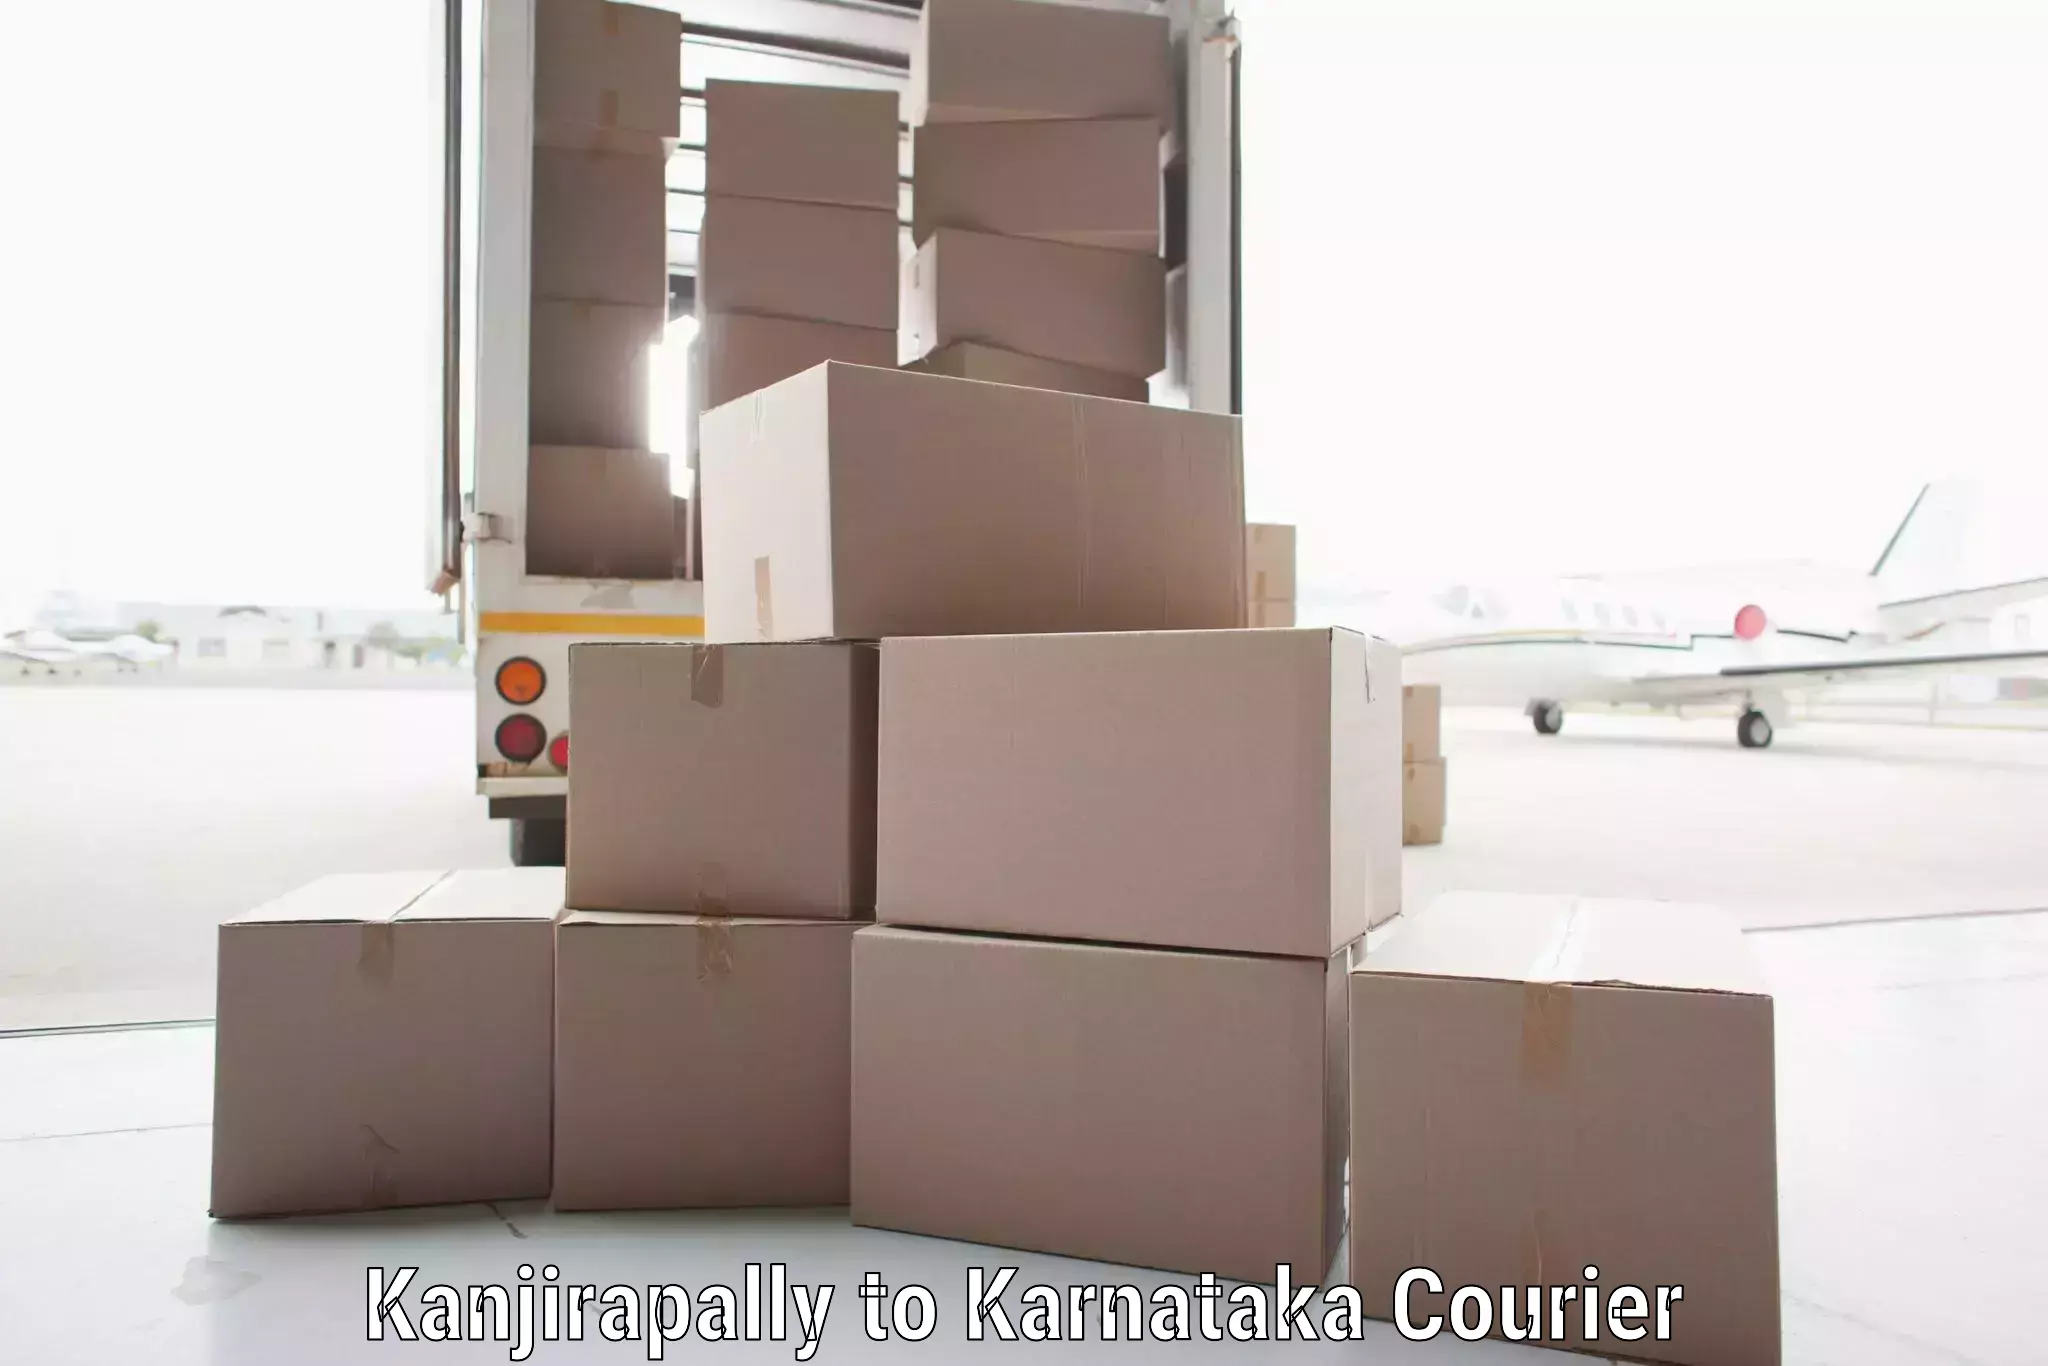 High-capacity parcel service Kanjirapally to Karnataka